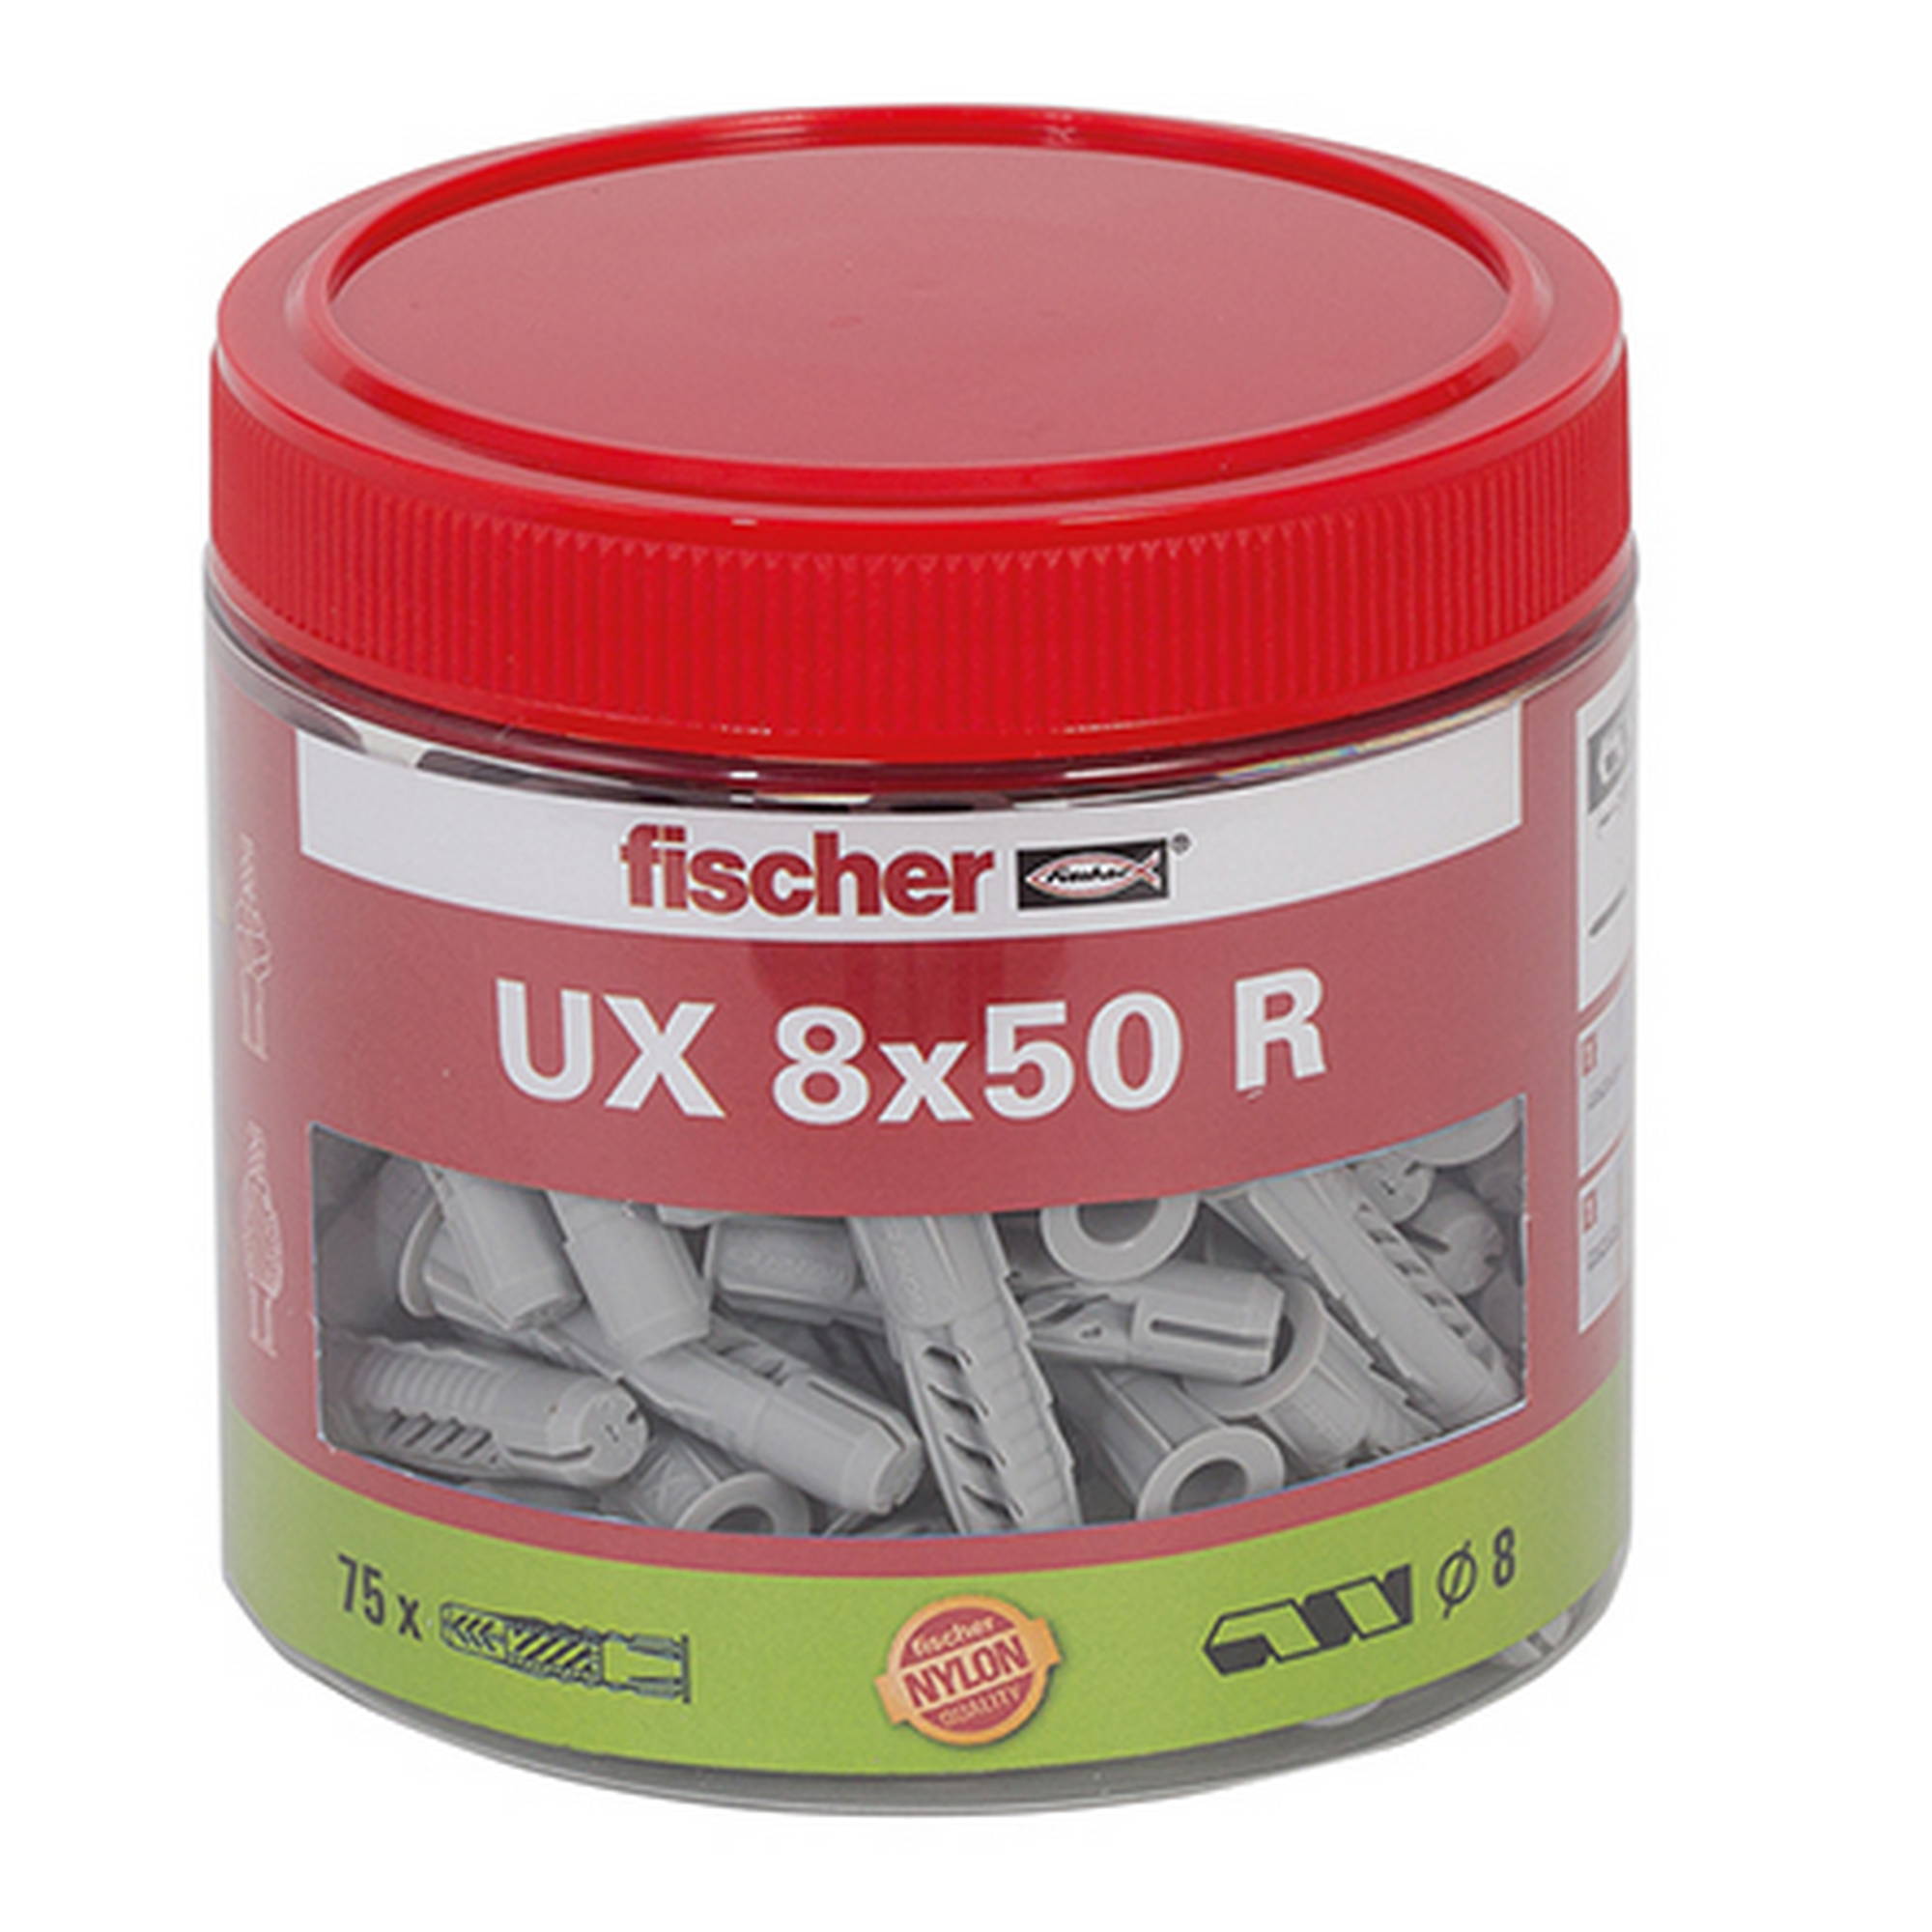 Runddose mit Universaldübeln 'UX' Ø 8 x 50 mm, 75 Stück + product picture